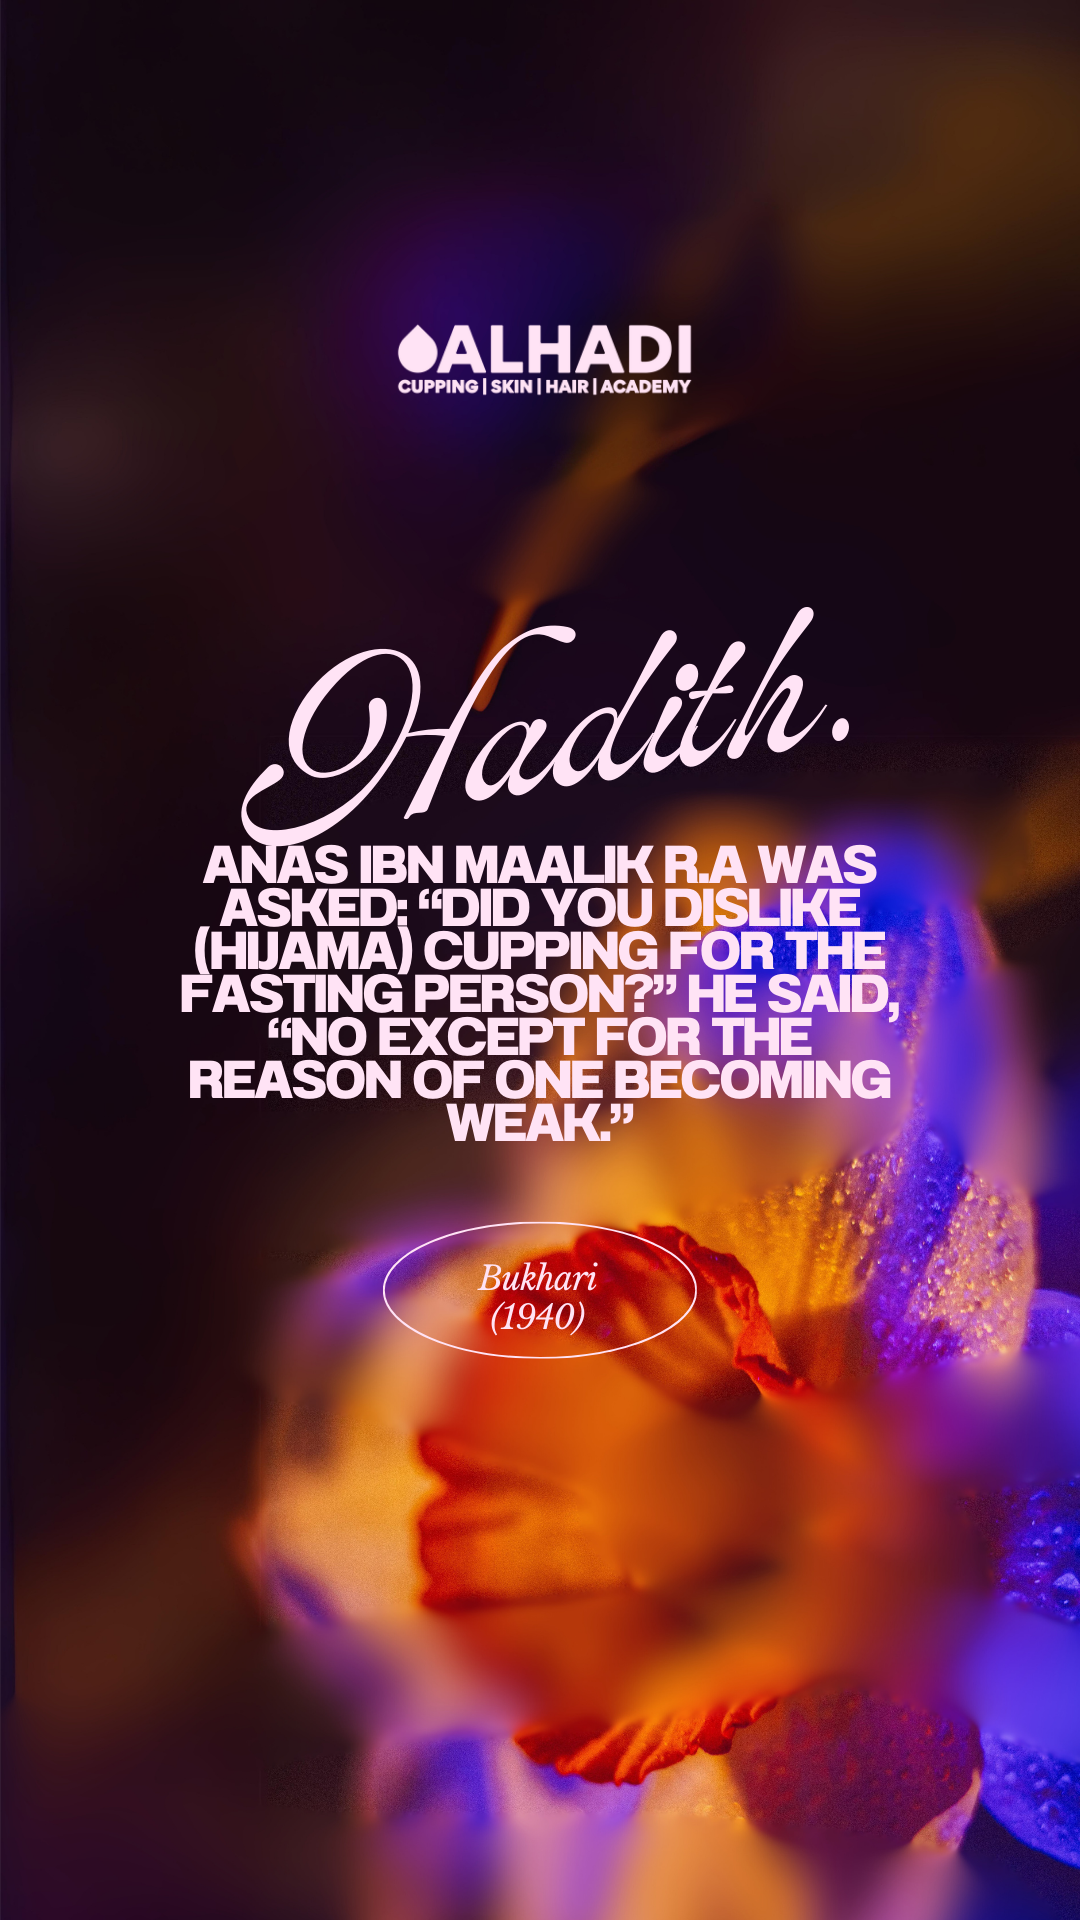 Al hadi hijama in hyderabad hadith on cupping hijama in islam hijama hadith on hijama in hadith 18